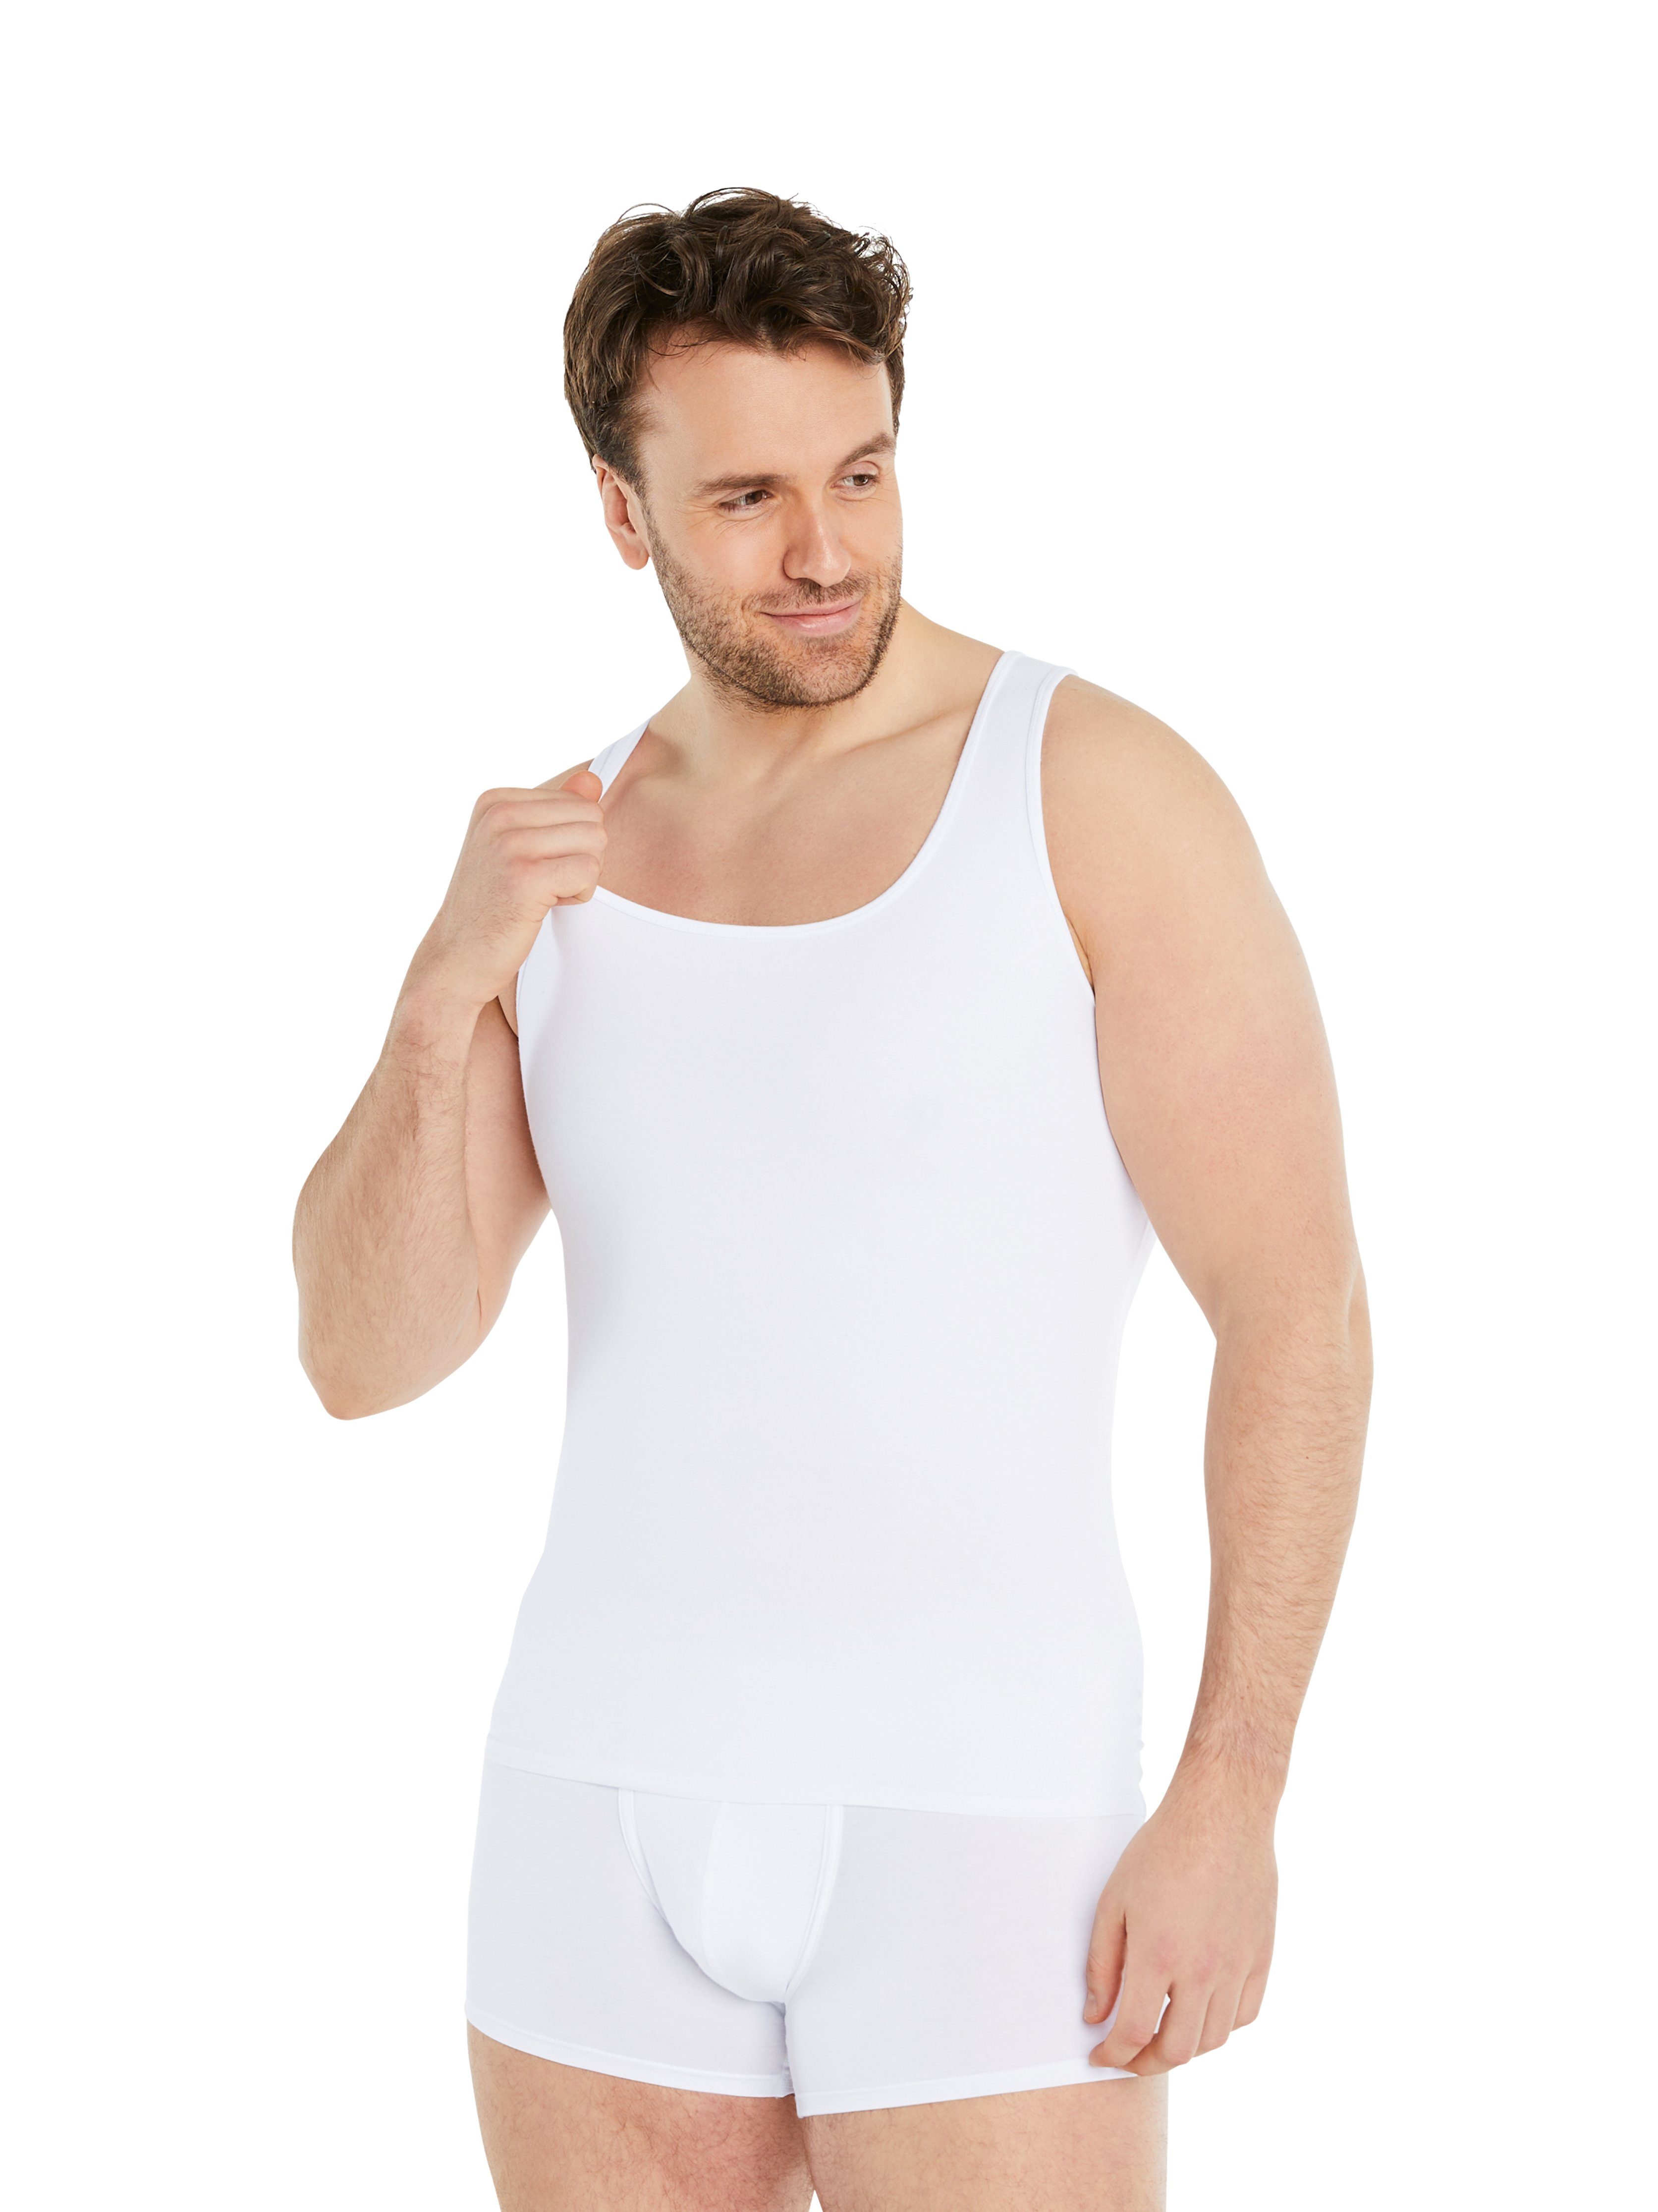 FINN Design Shapinghemd Shapewear starke Kleidergröße Kompression, weniger Kompressions-Unterhemd Weiß Herren Ärmellos extra eine